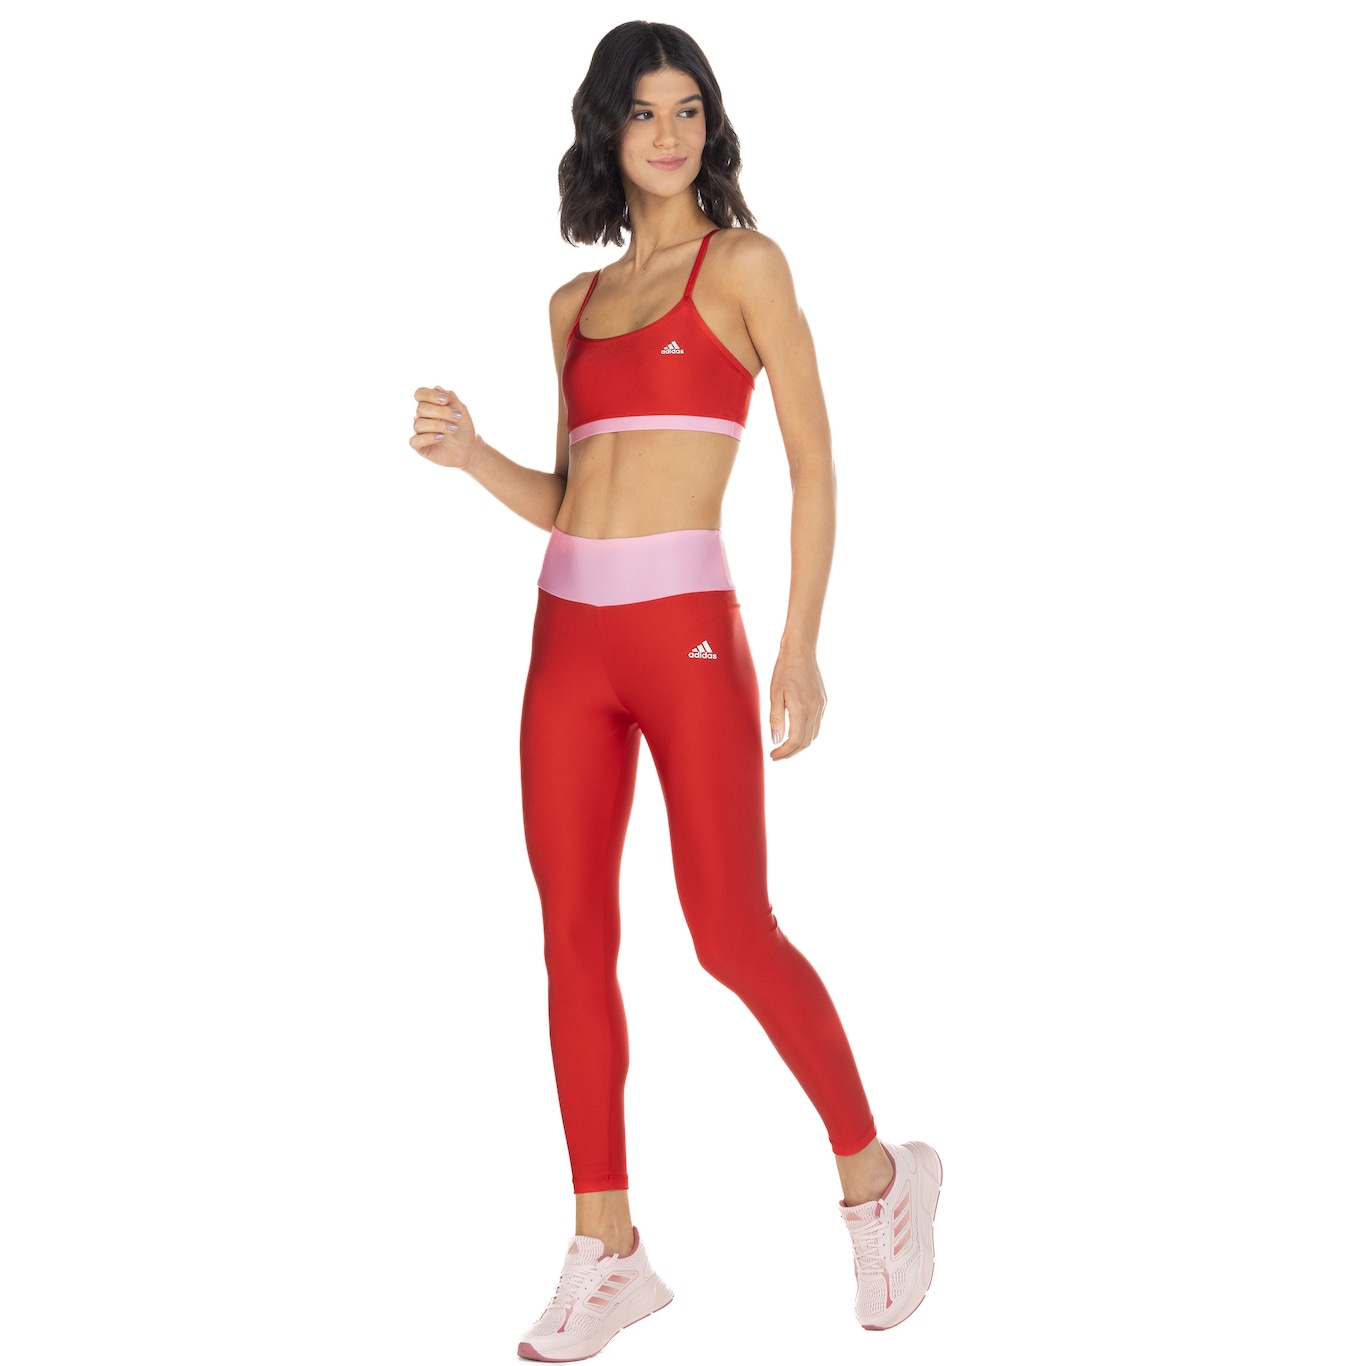 Calça Legging Adidas Yoga Feminina - Vermelho